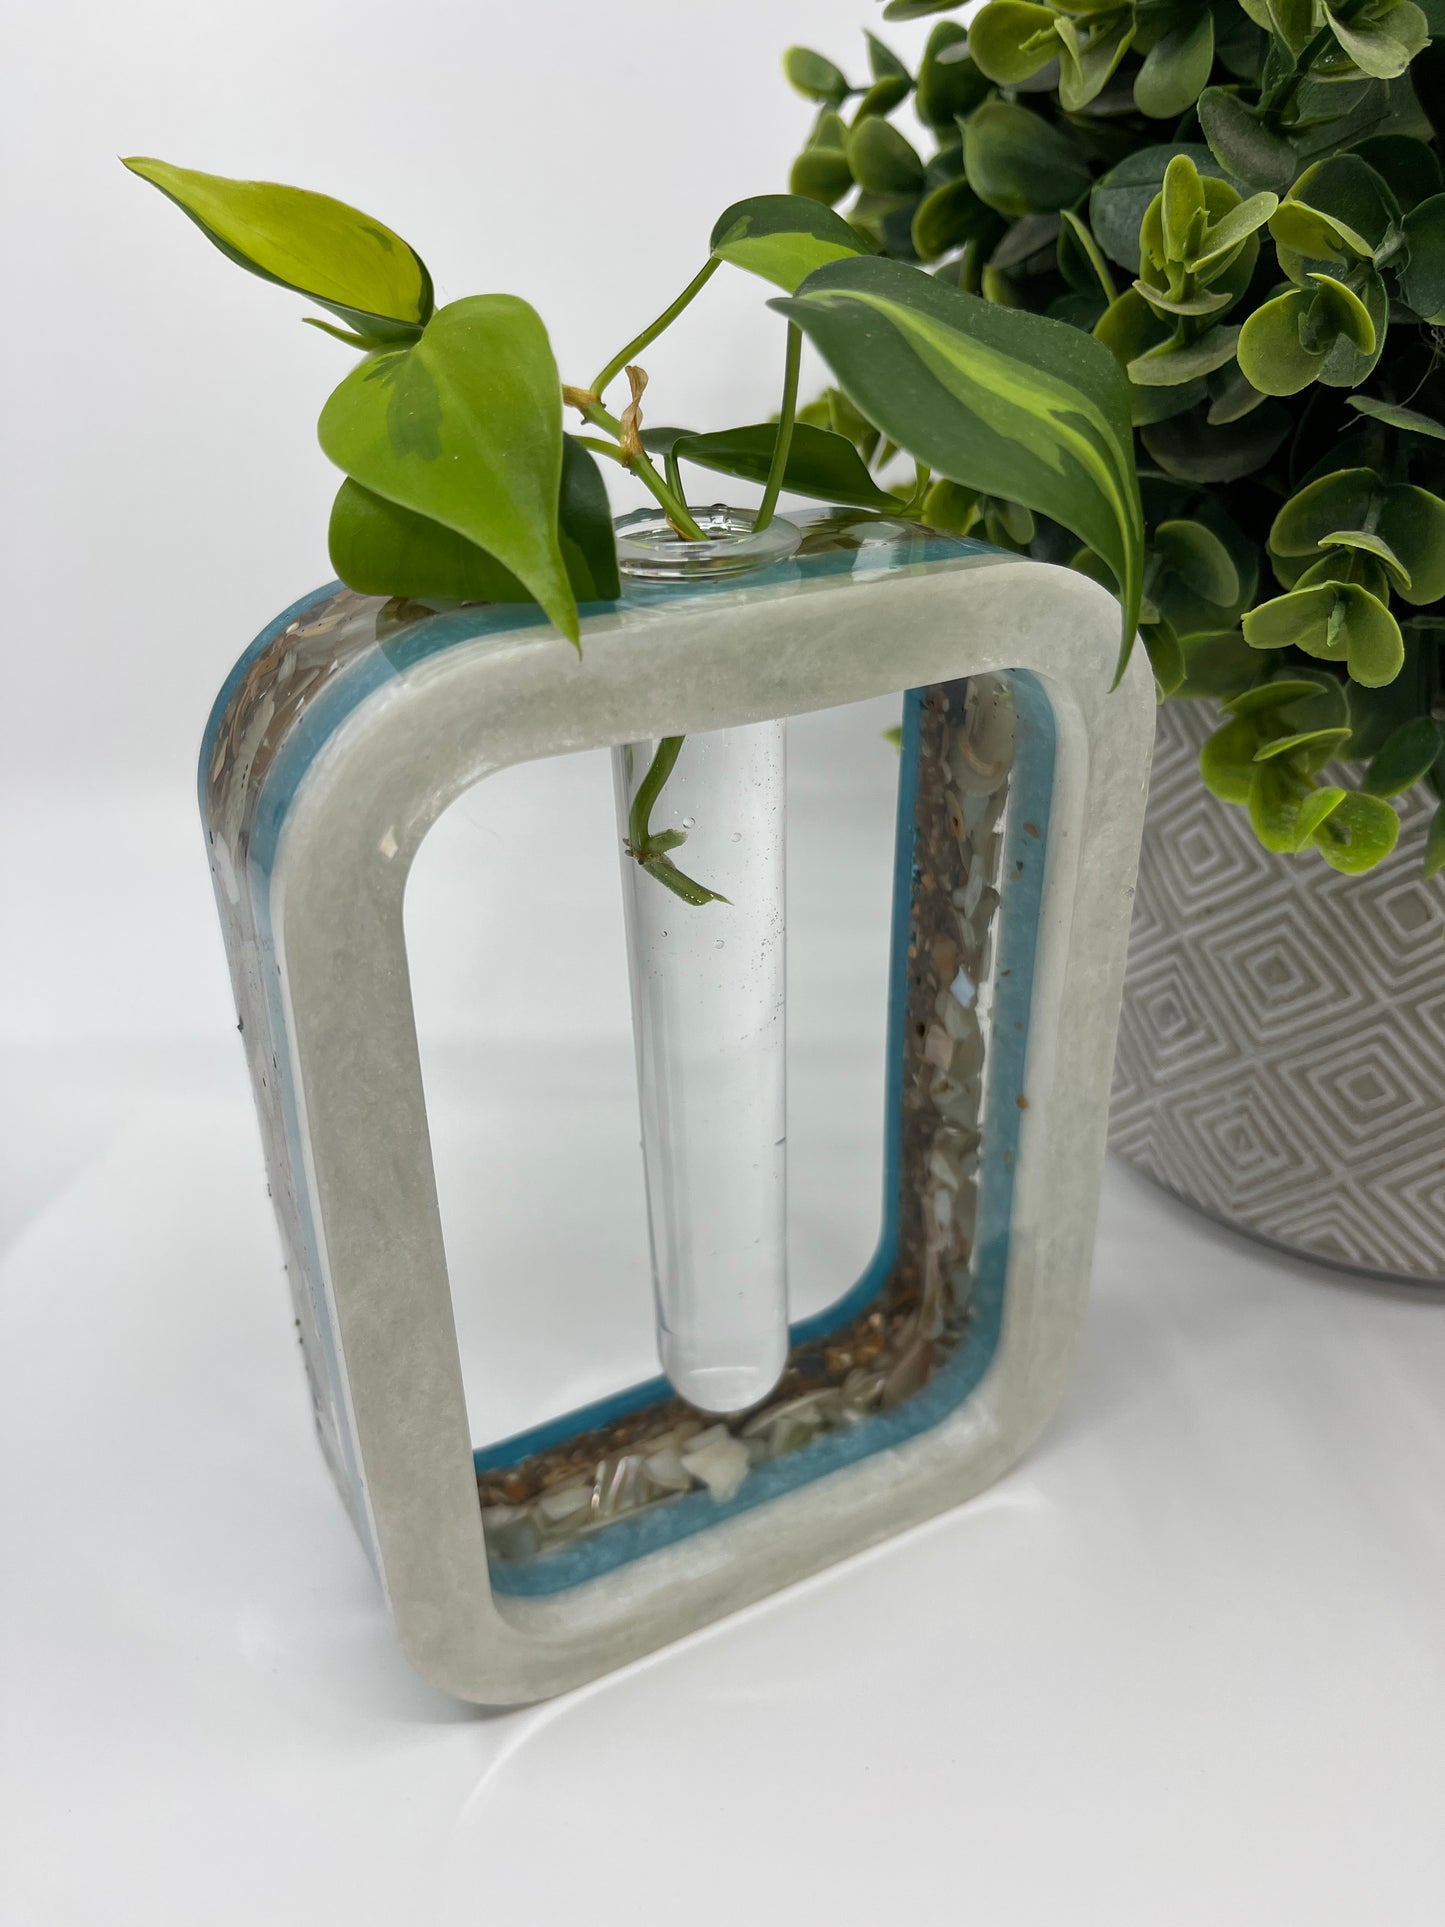 Plant Test Tube Resin Starter Vase - Teal, Shells, Baby Blue, White #1